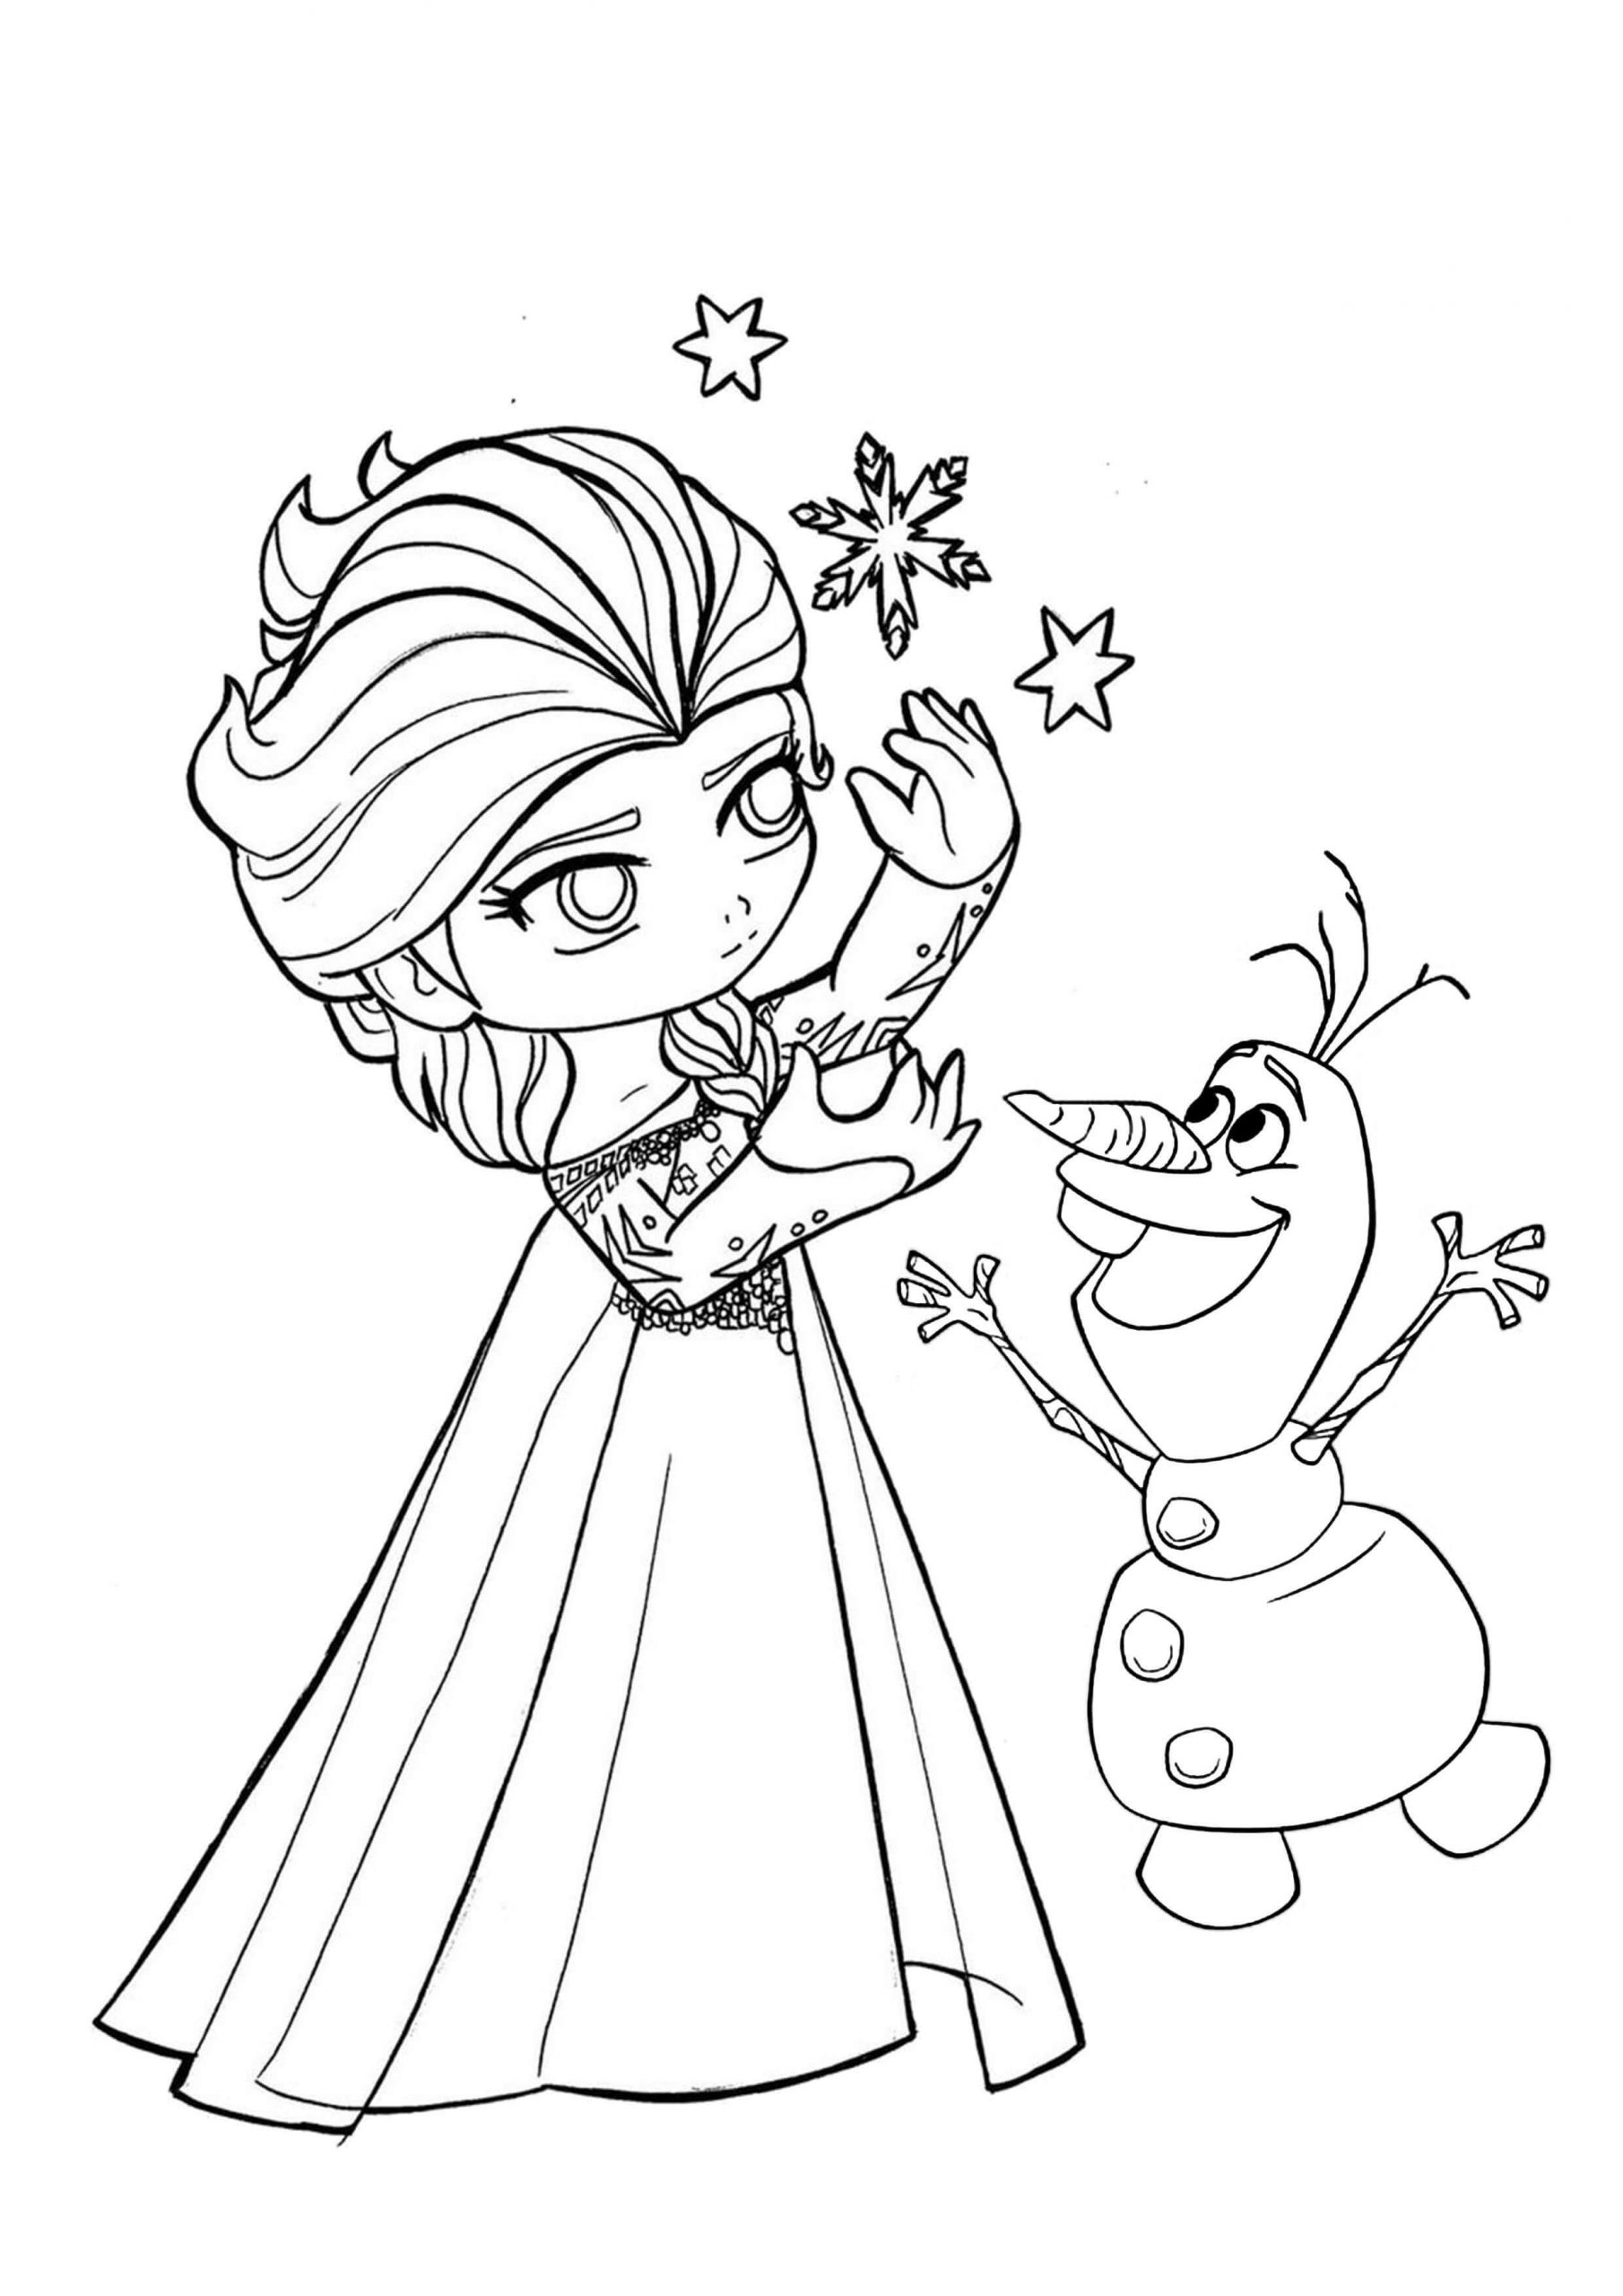 Malá princezna Elsa s Olafem omalovánka